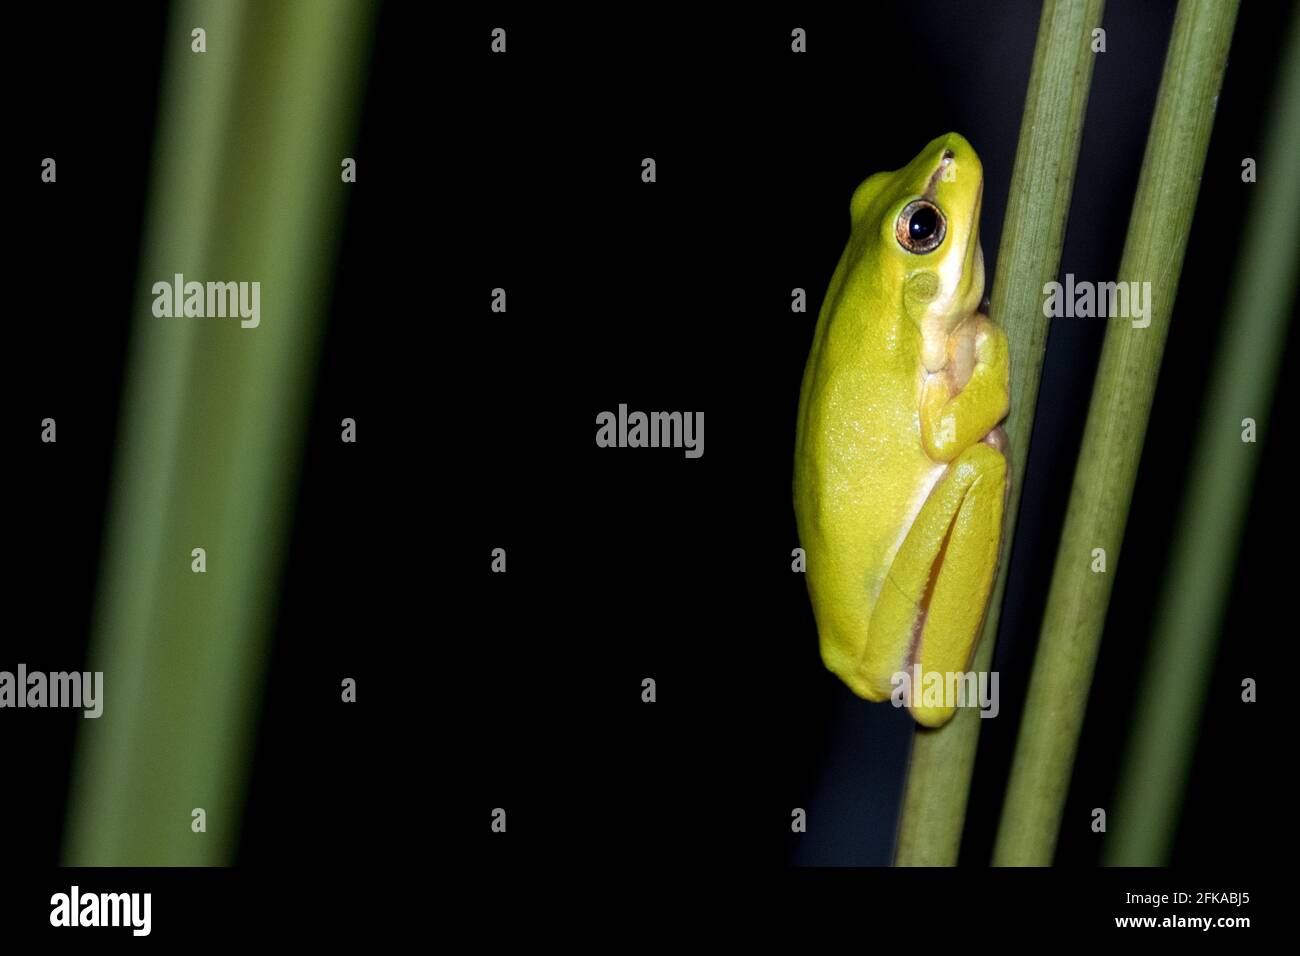 Pequeña, linda rana verde del árbol se sienta en una caña en las tierras mojadas en la noche mirando relajado Foto de stock